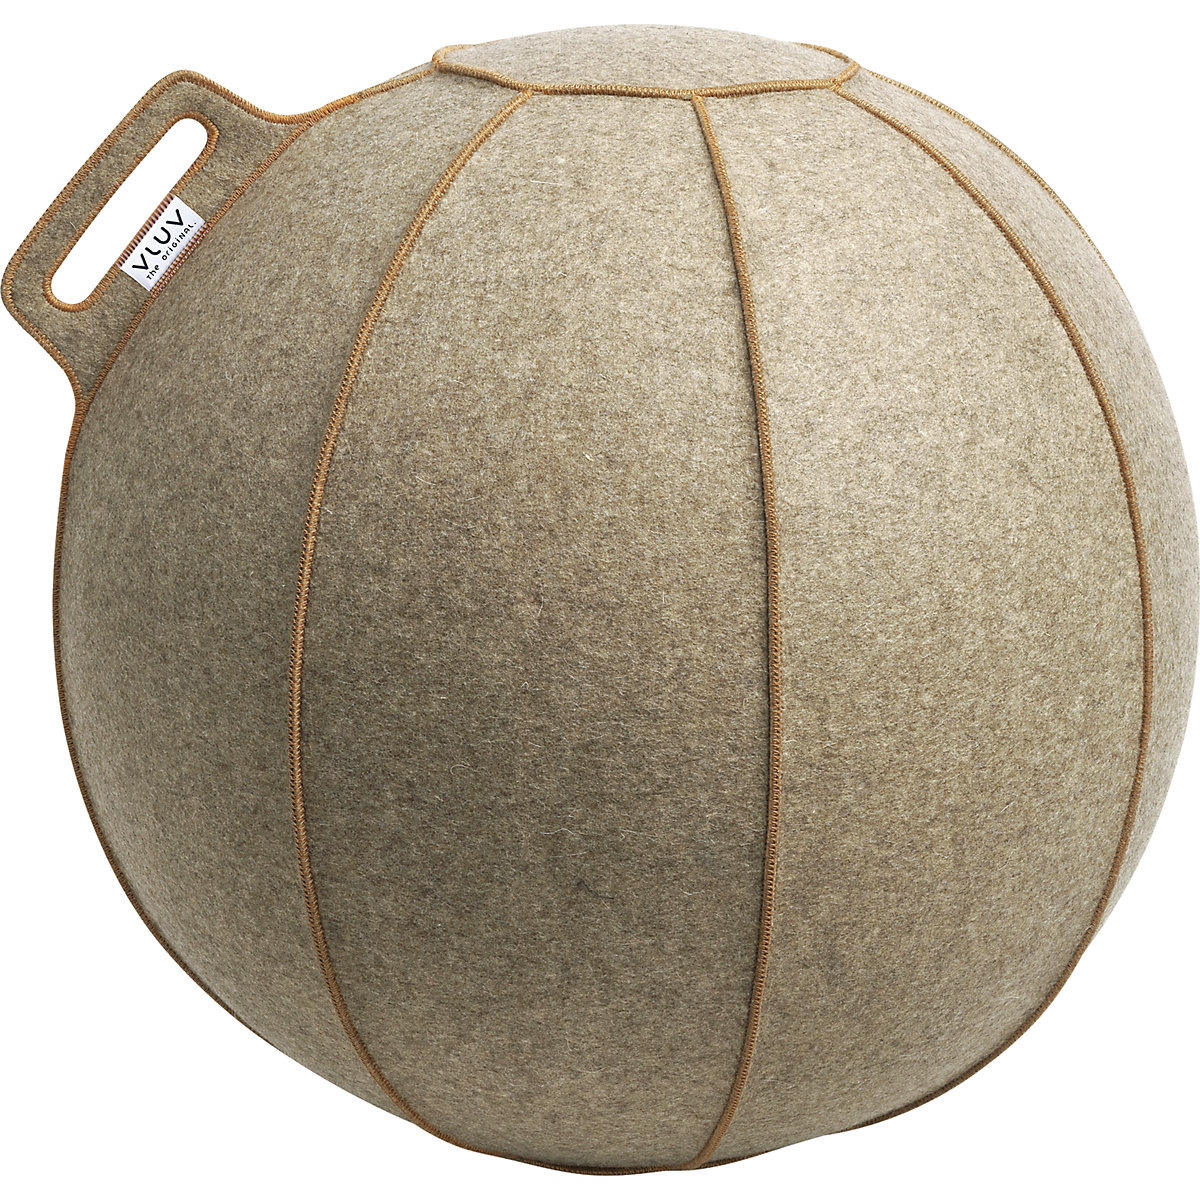 VELT Swiss ball – VLUV, made of merino wool felt, 600 – 650 mm, mottled greige/brown